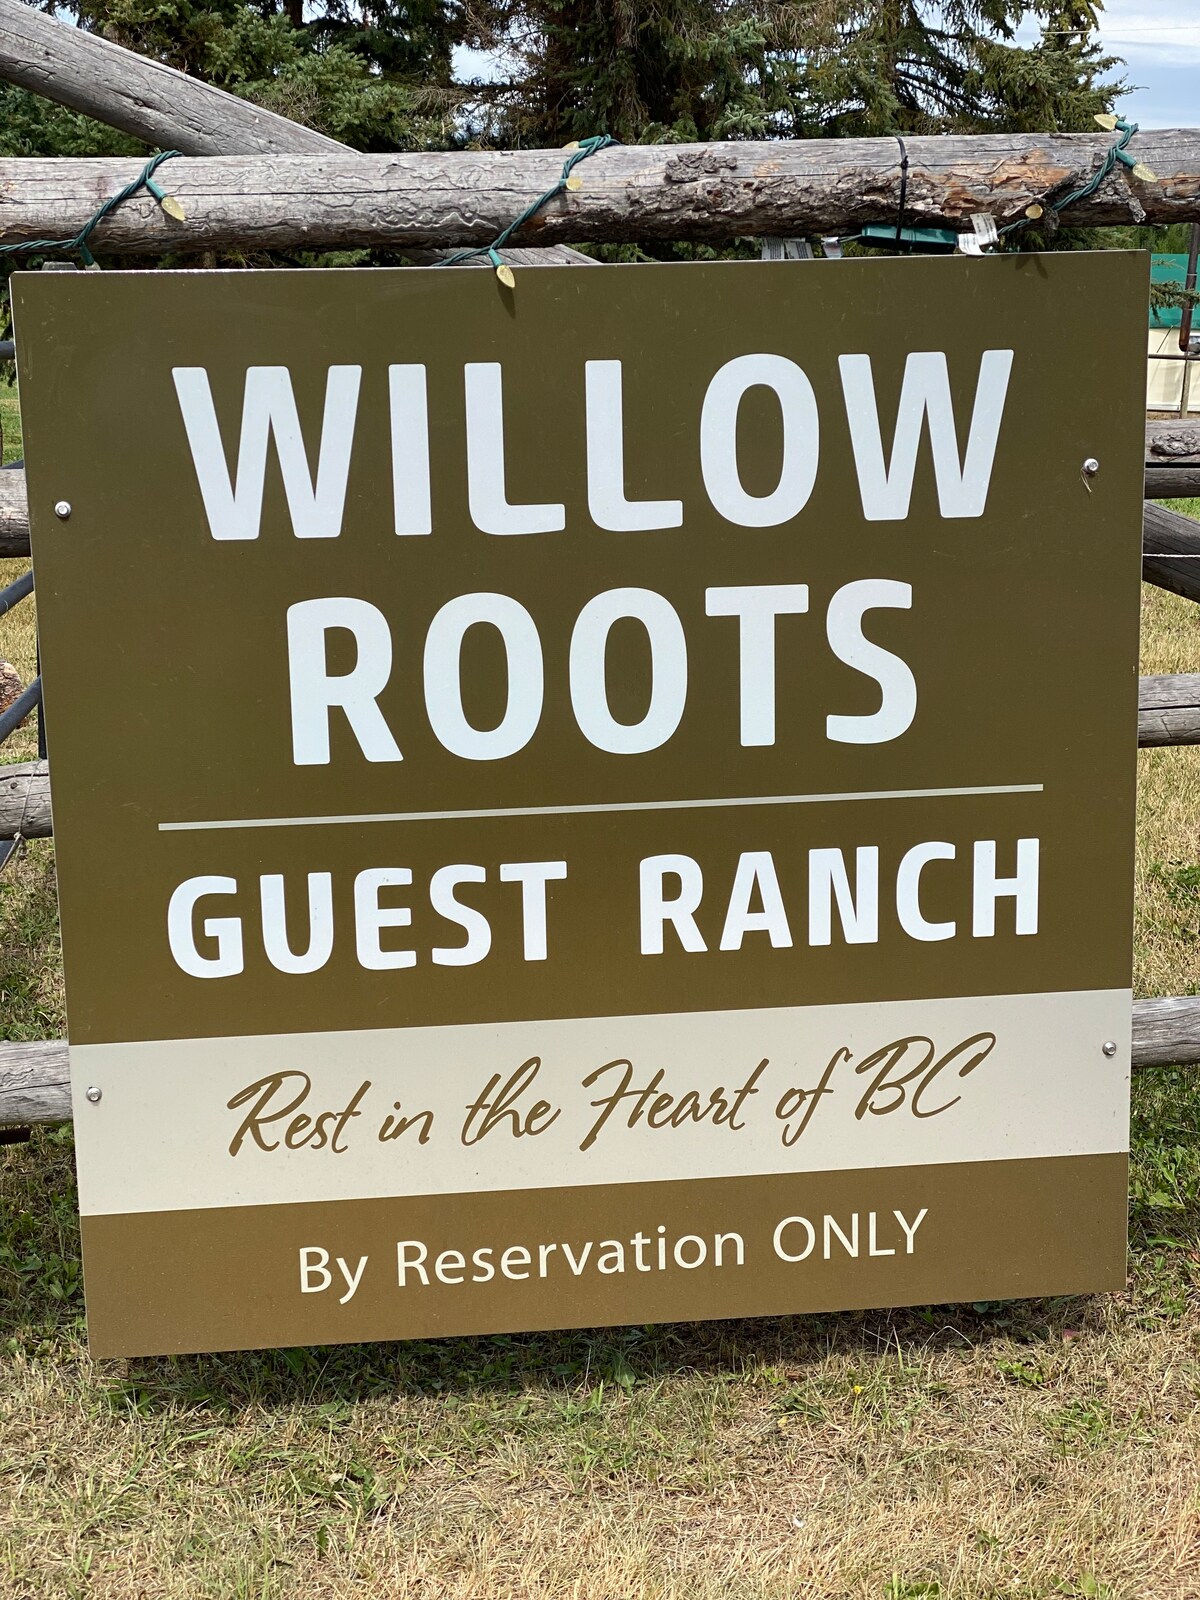 Willow Roots客人牧场-位于不列颠哥伦比亚省心脏地带休息